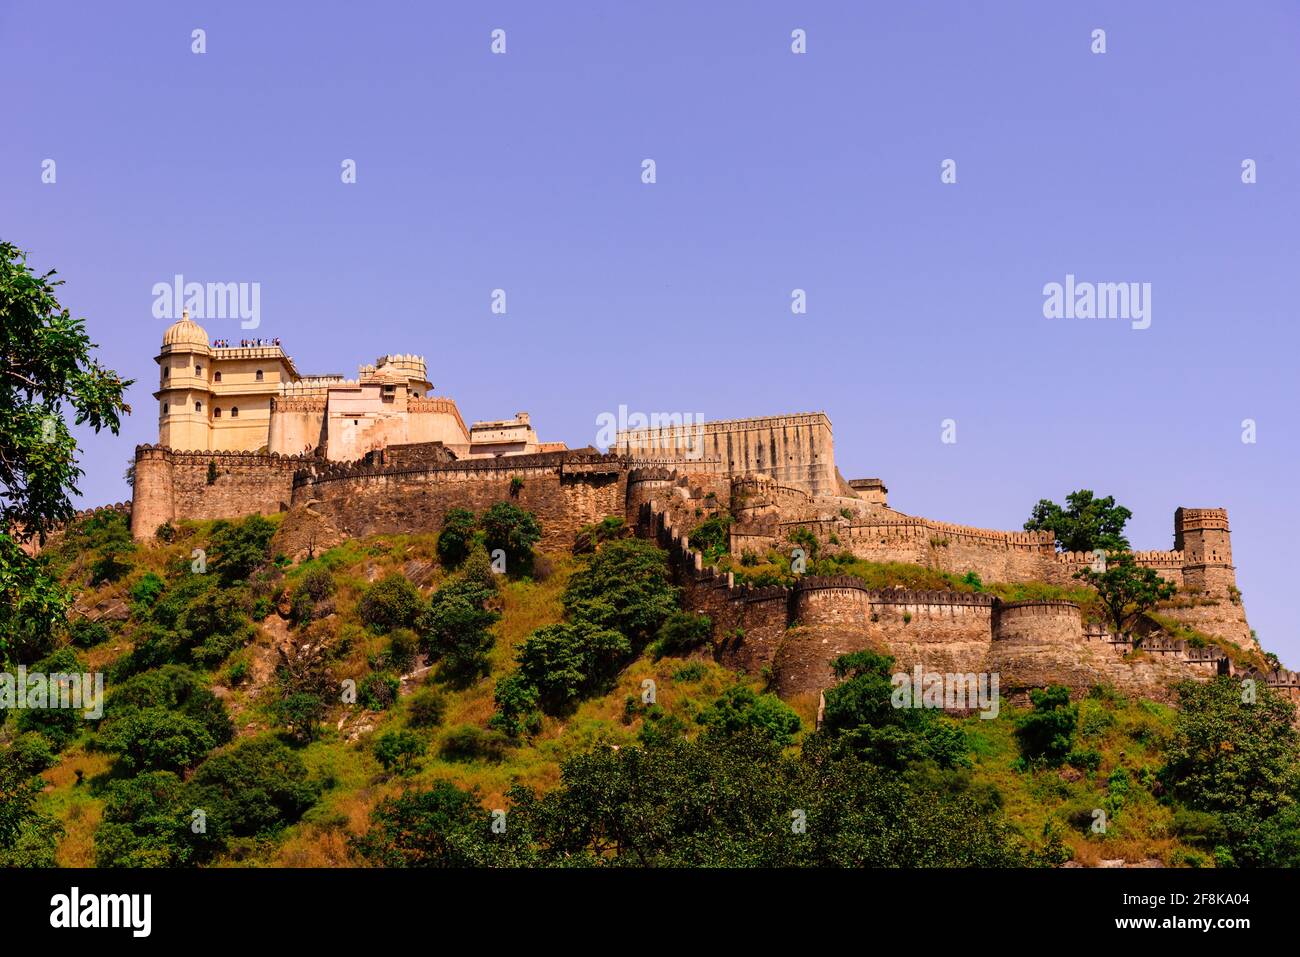 Le fort de Kumbhalgarh est une forteresse de Mewar construite sur les collines d'Aravalli au XVe siècle par le roi Rana Kumbha dans le district de Rajsamand, près d'Udaipur. Banque D'Images